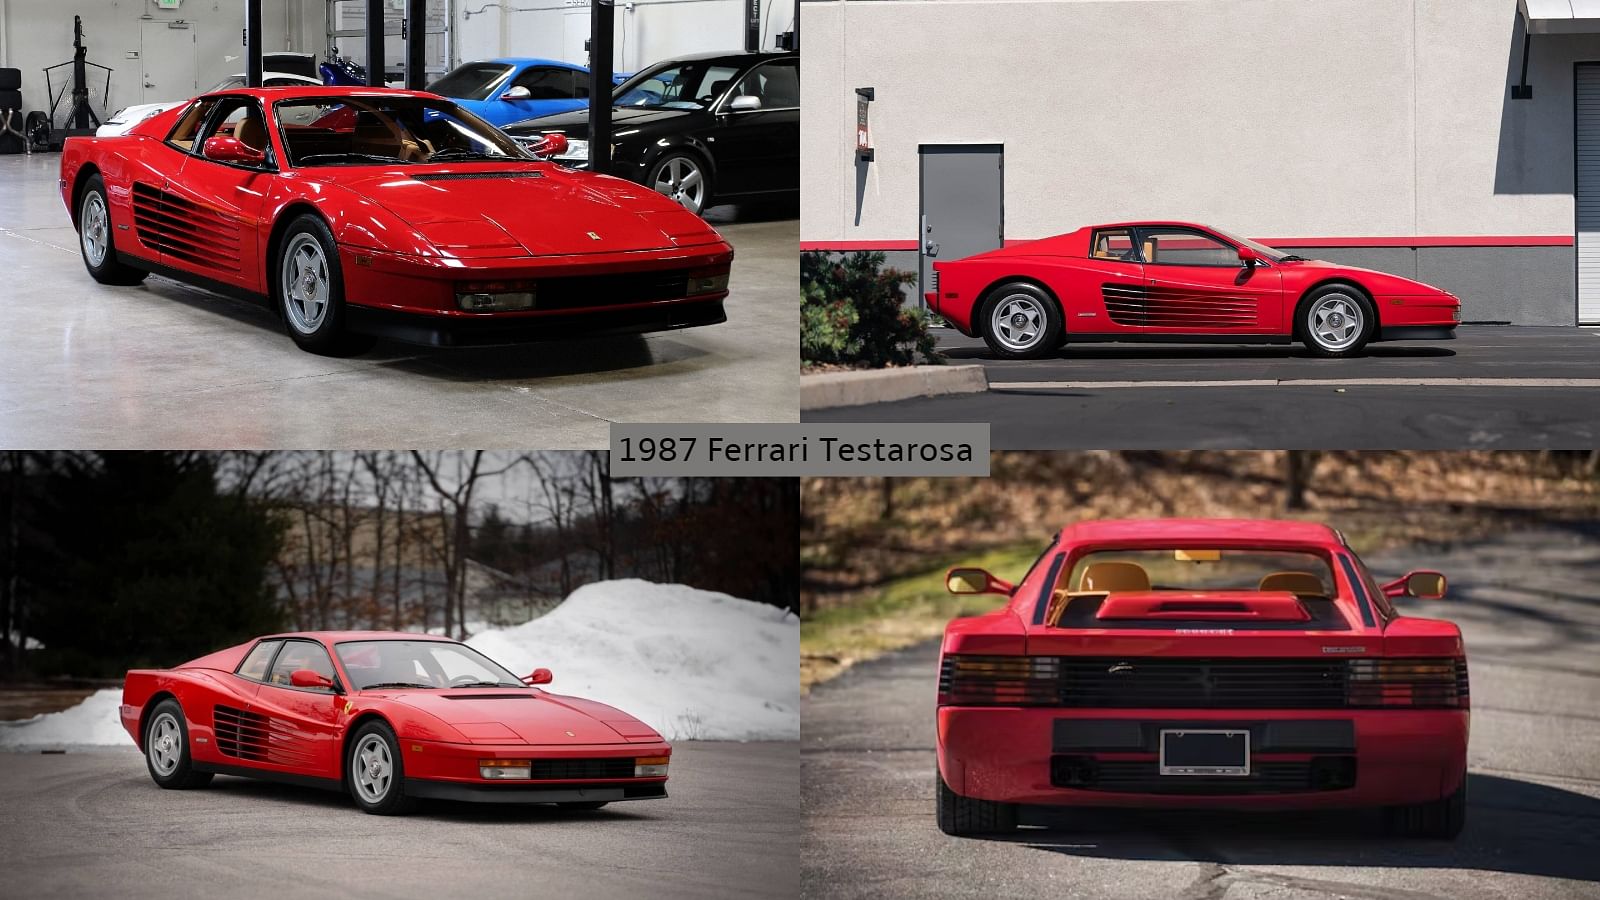 1987 Ferrari Testarosa - "Rose"